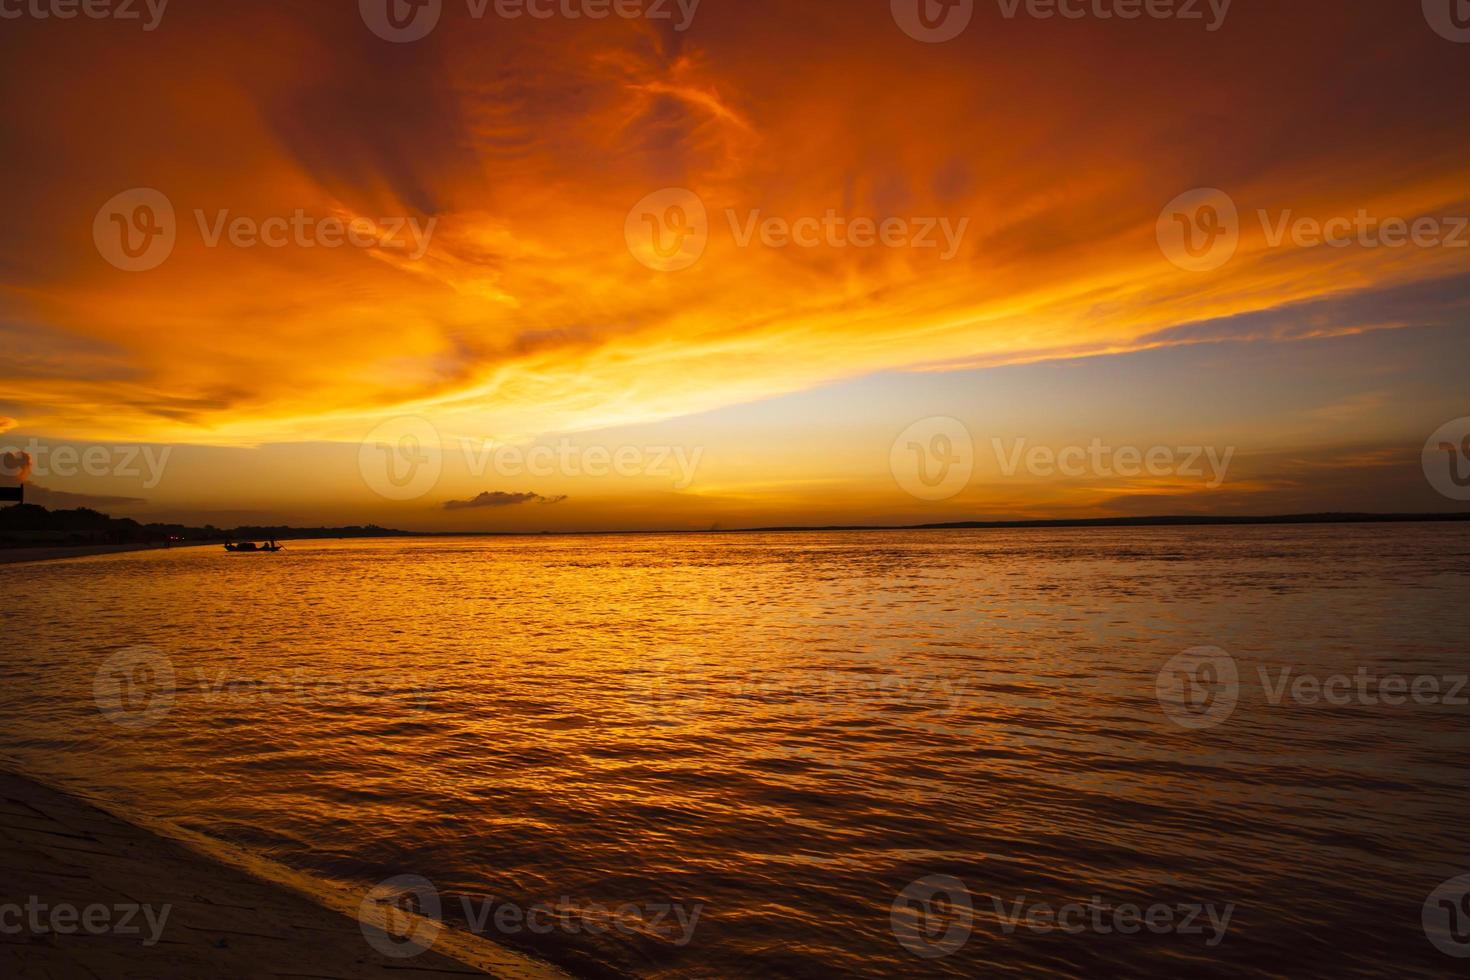 bela vista panorâmica do mar contra o céu laranja foto